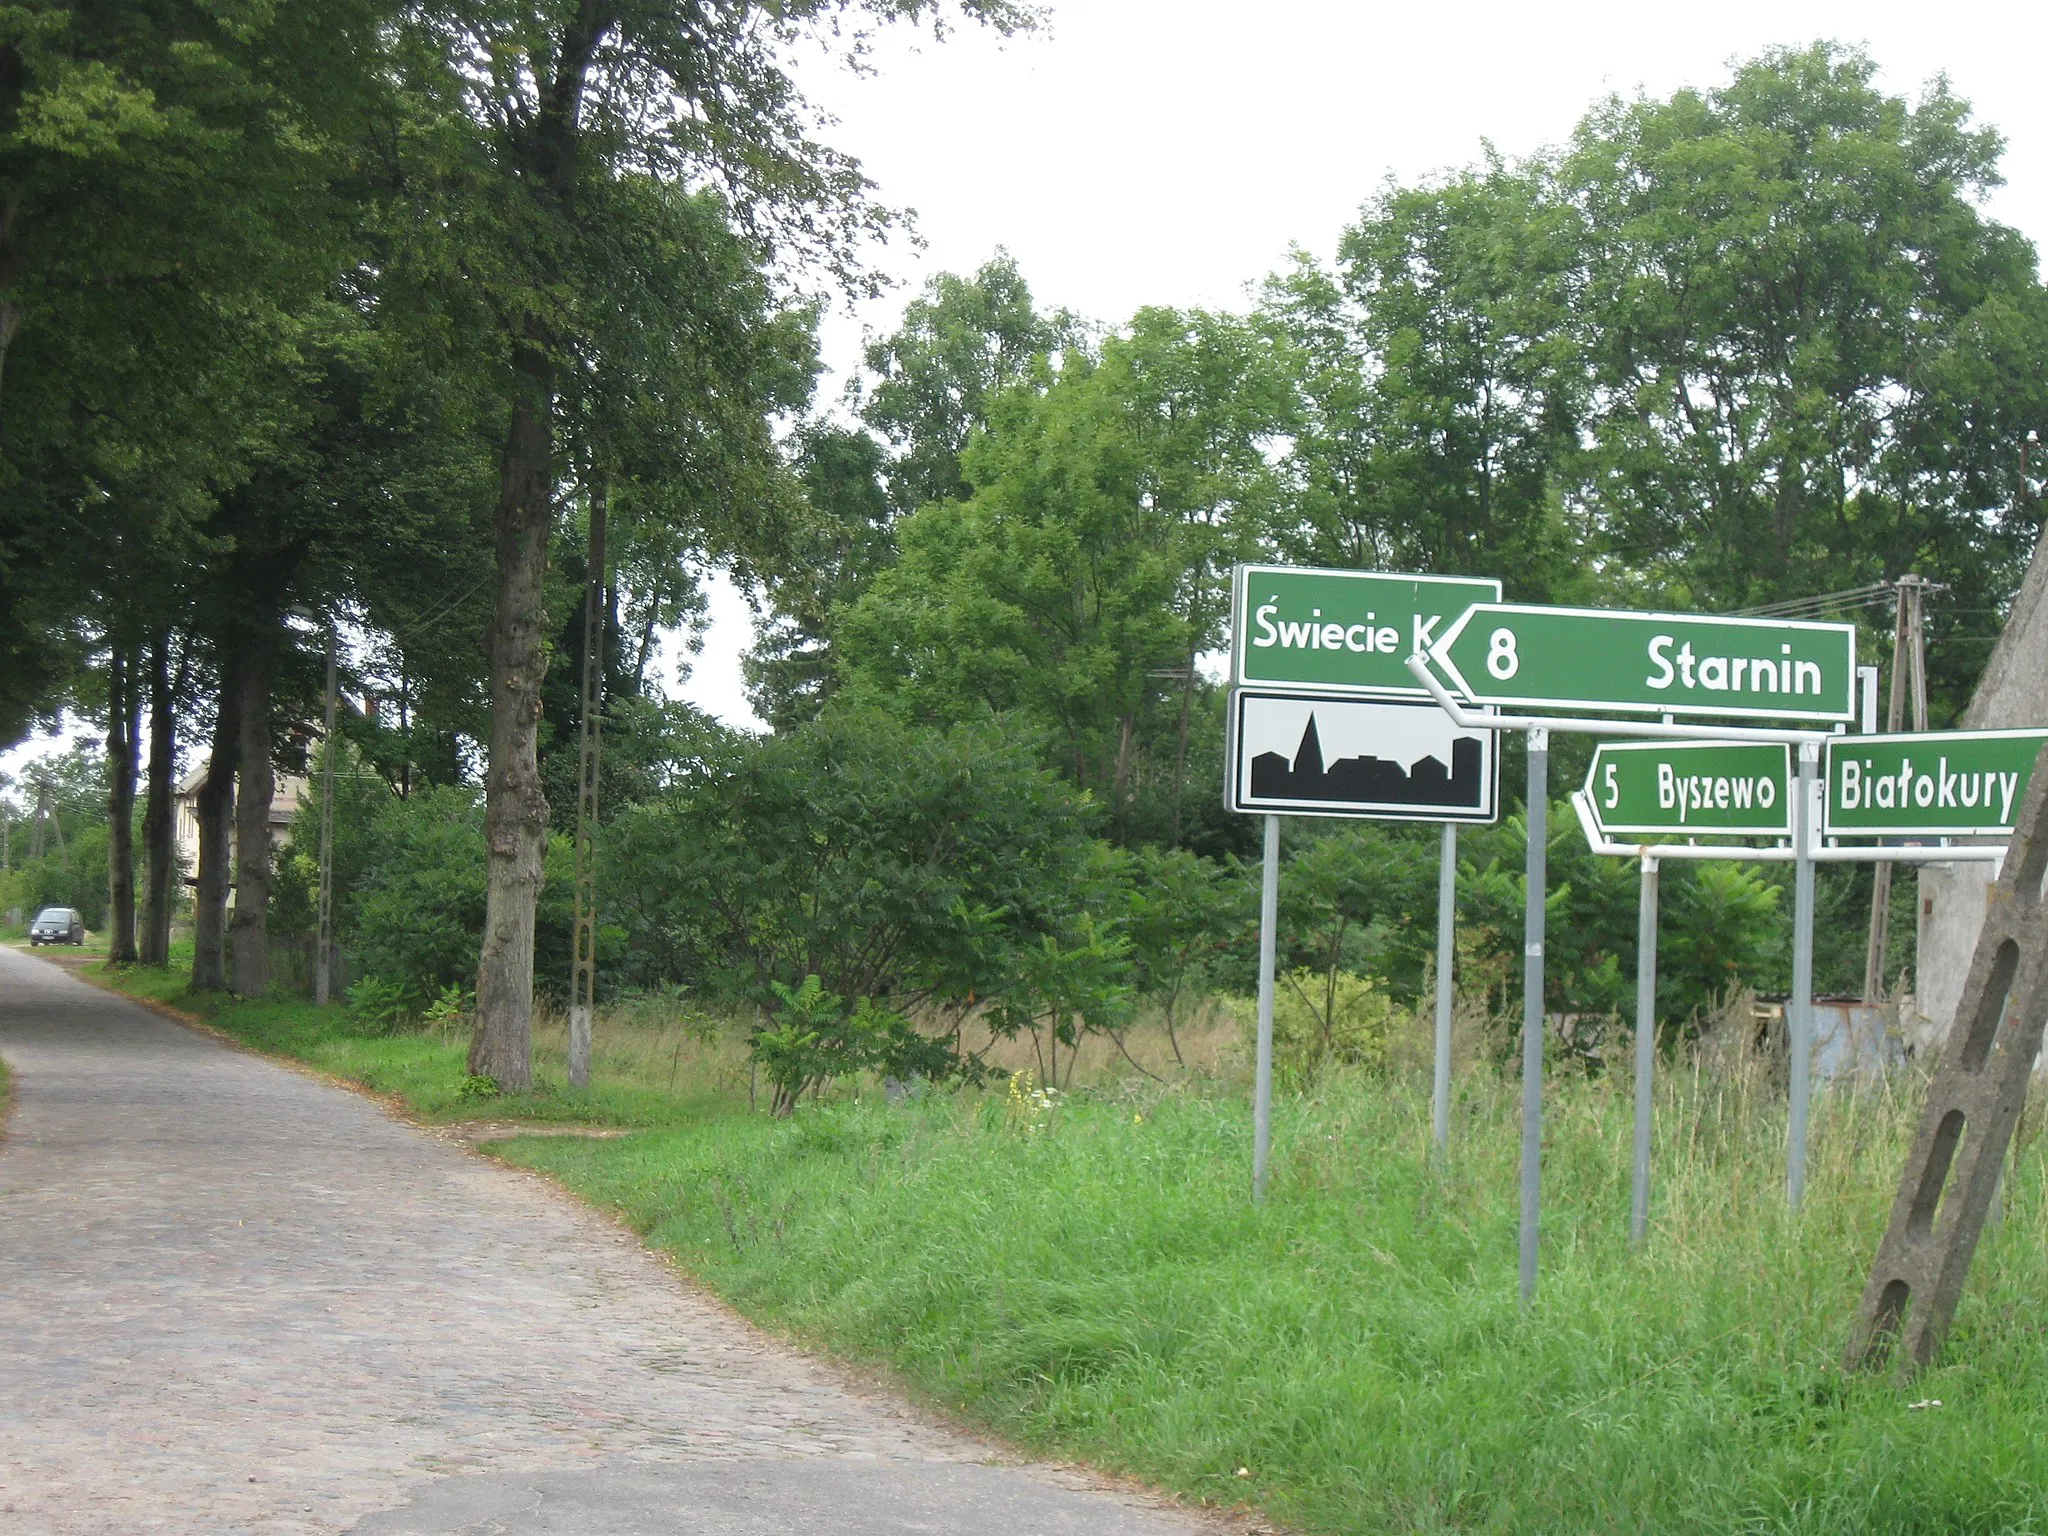 Photo showing: Skrzyżowanie dróg ze Starnina, Byszewa i Białokur w Świeciu Kołobrzeskim